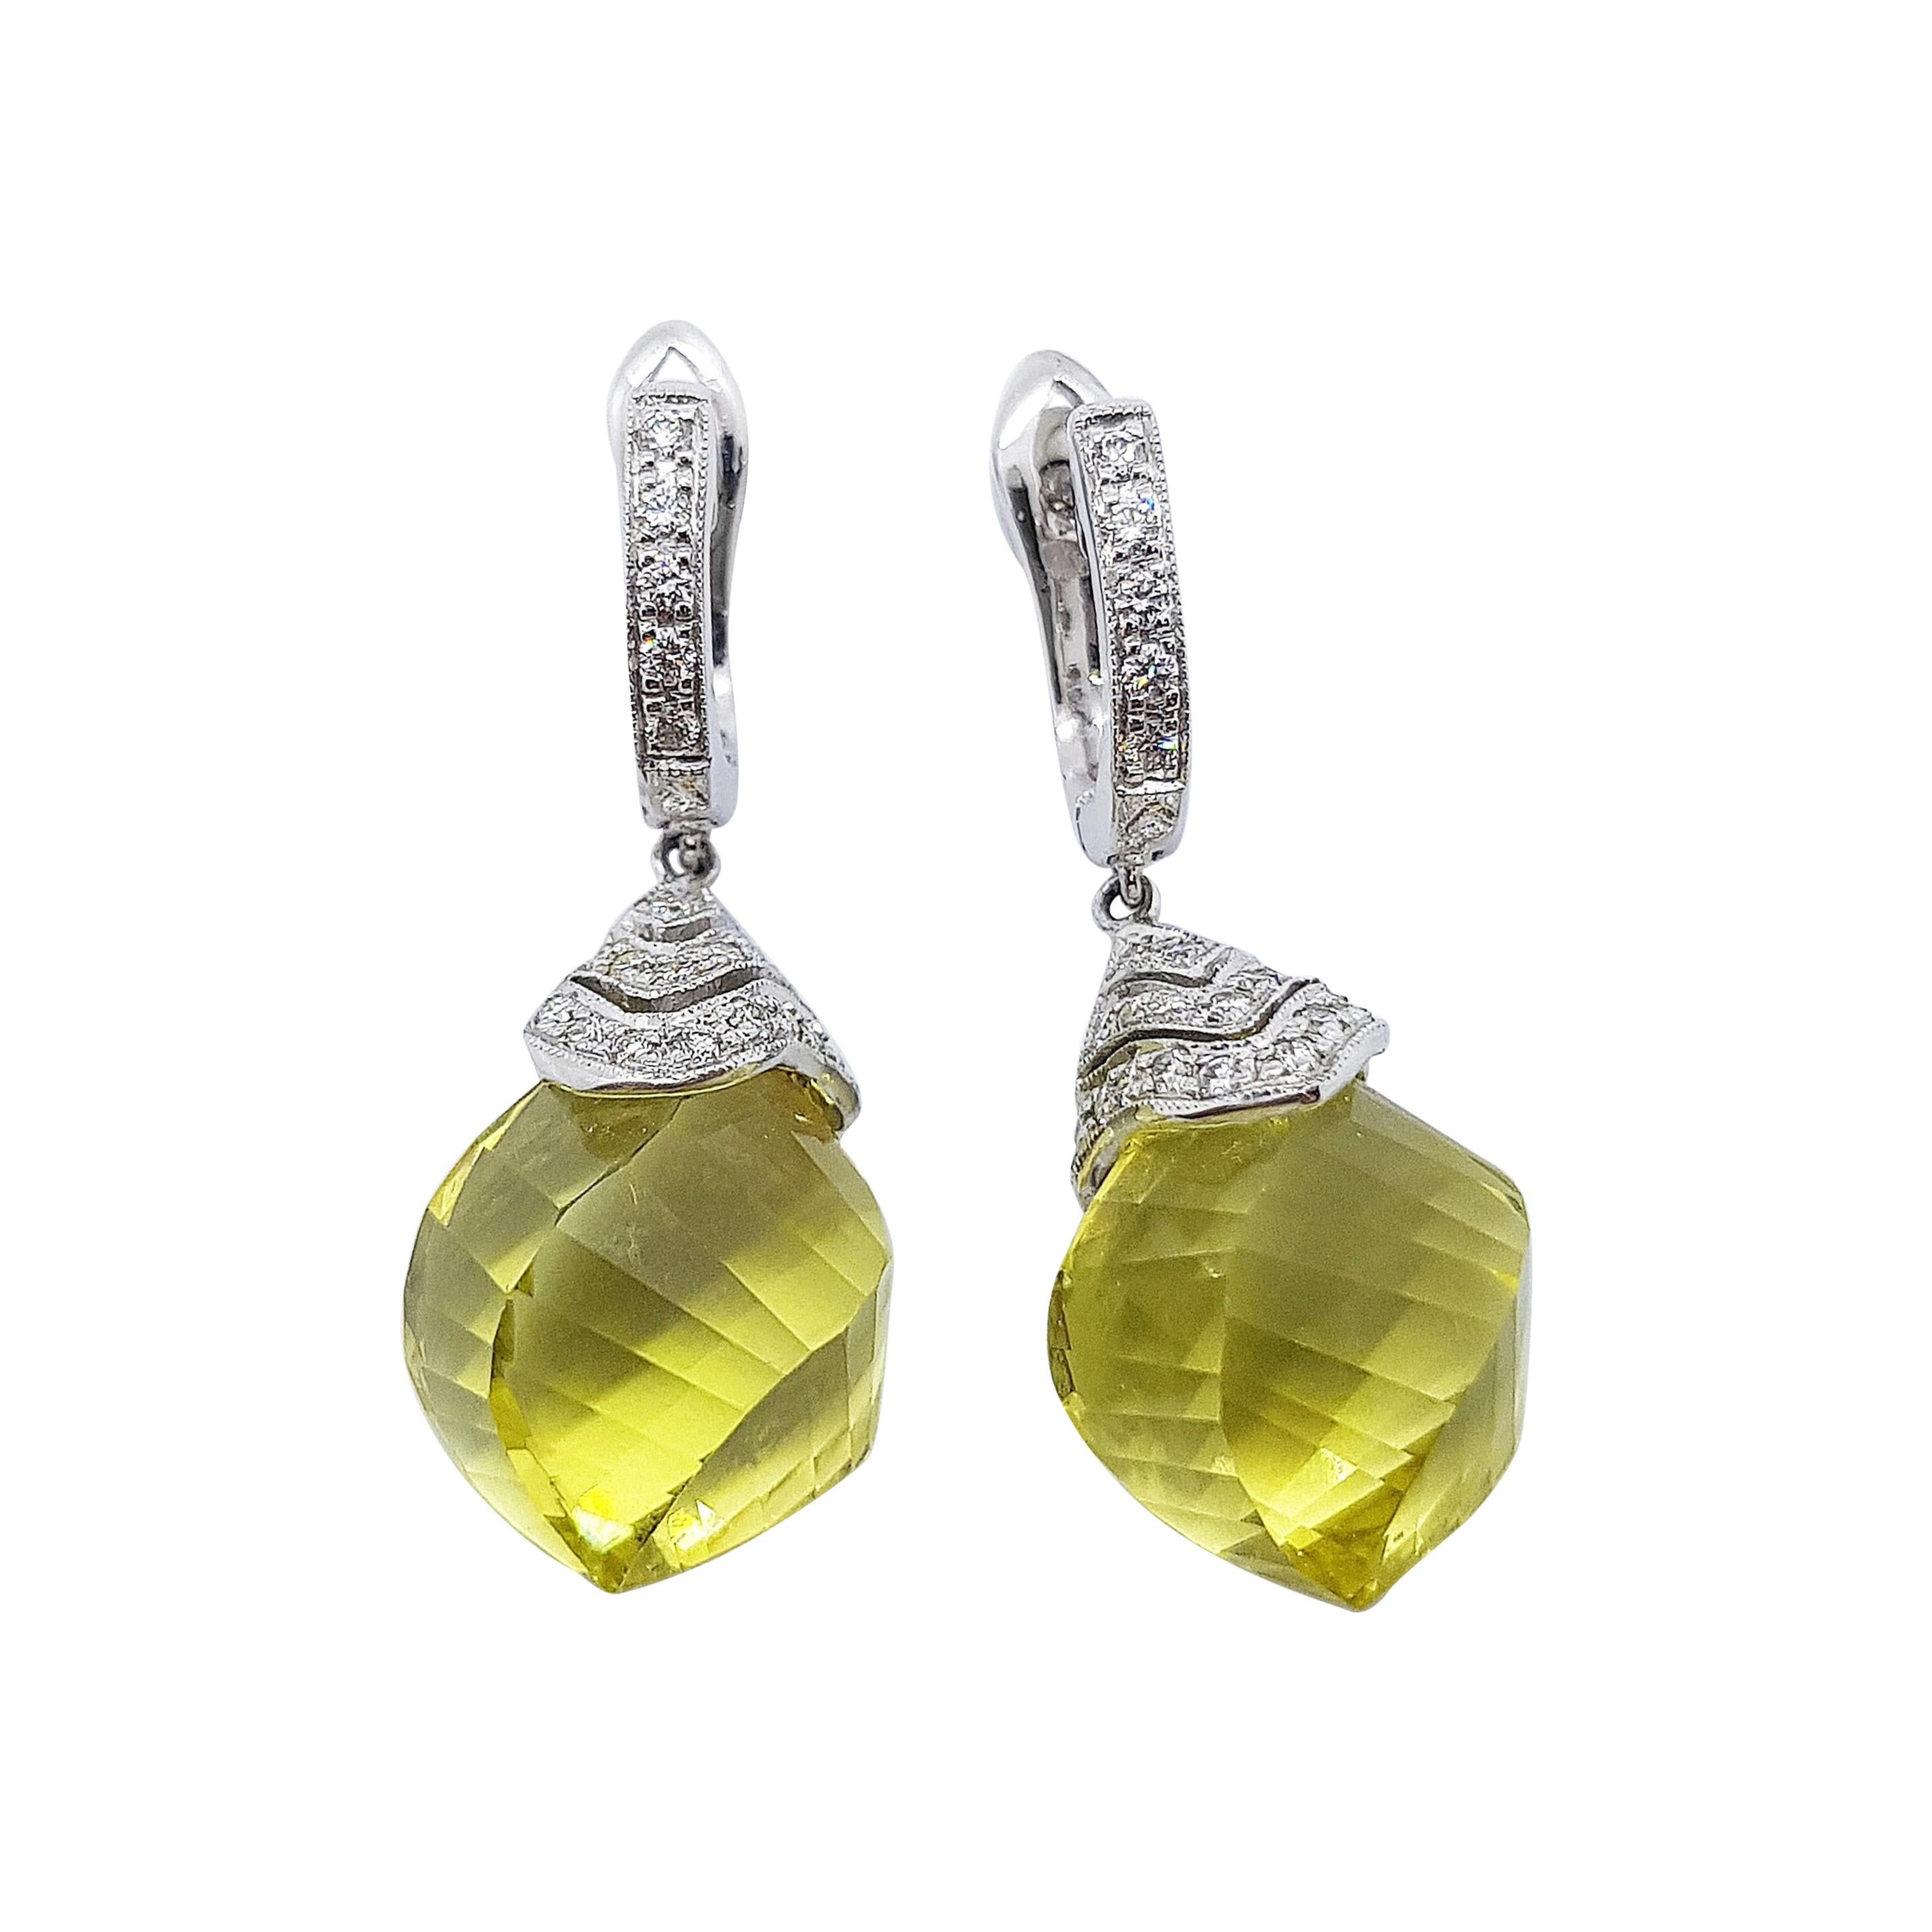 Lemon Quartz with Diamond Earrings Set in 18 Karat White Gold Settings